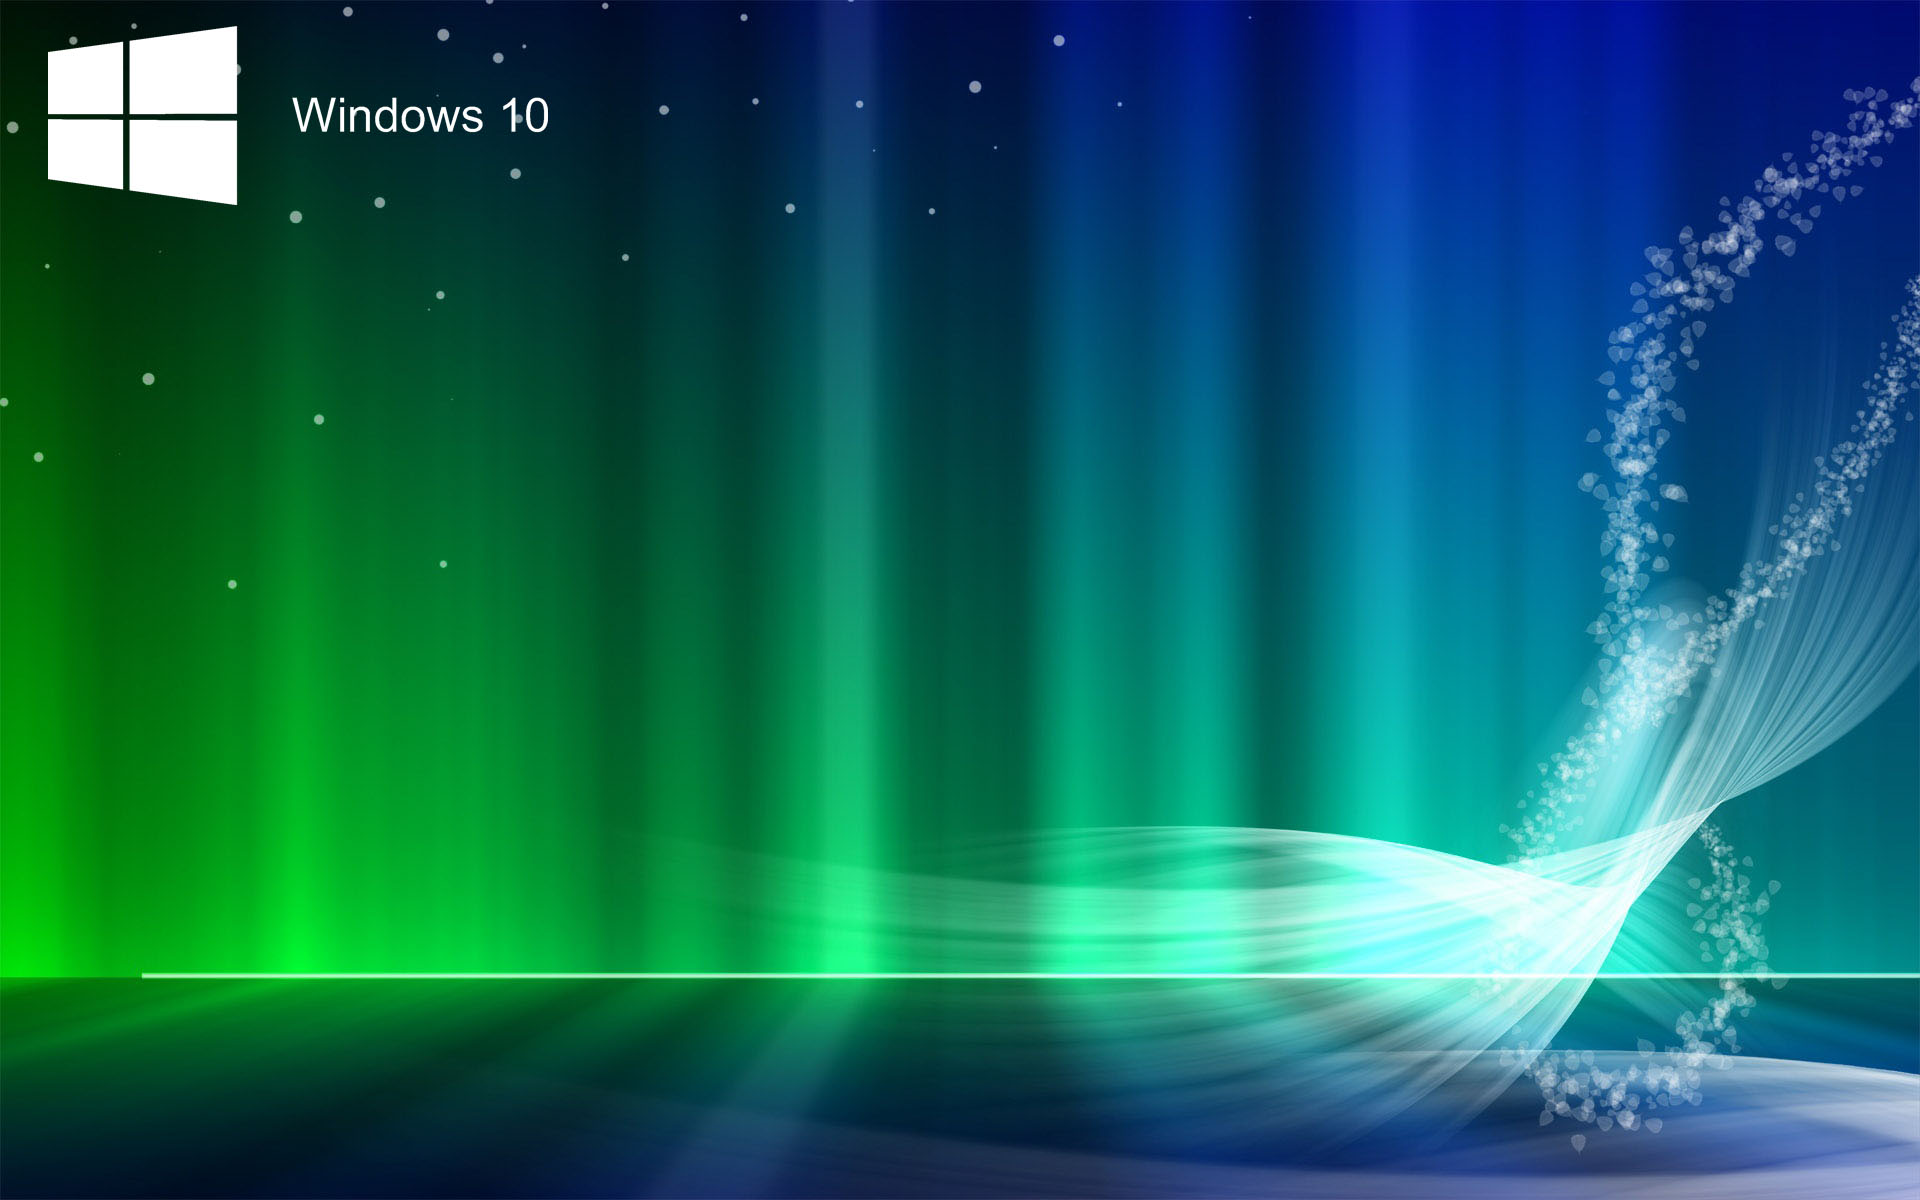 Laptop HD Wallpapers For Windows 10 | PixelsTalk.Net